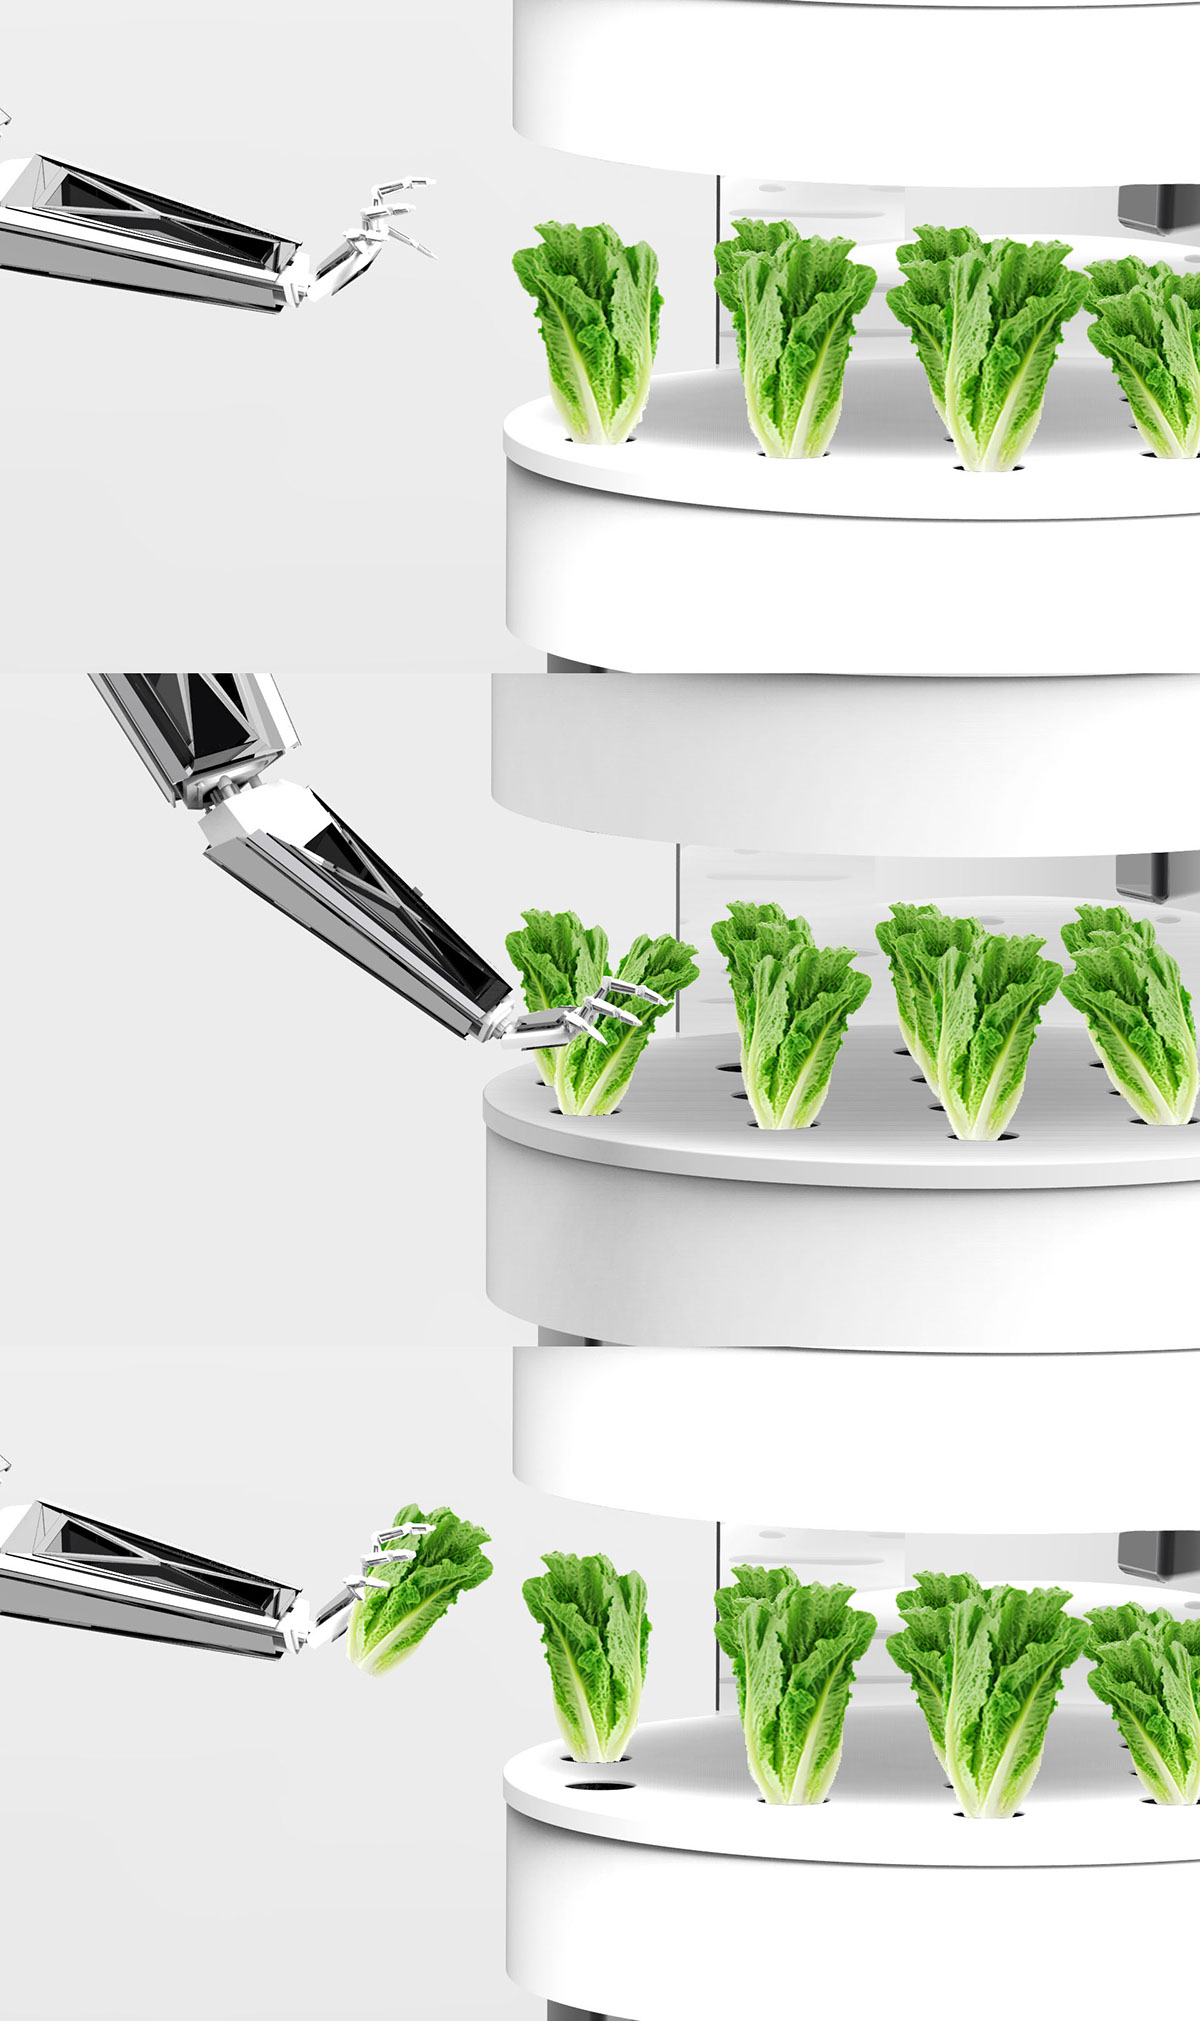 Sustainable Food  futuristic scenarios